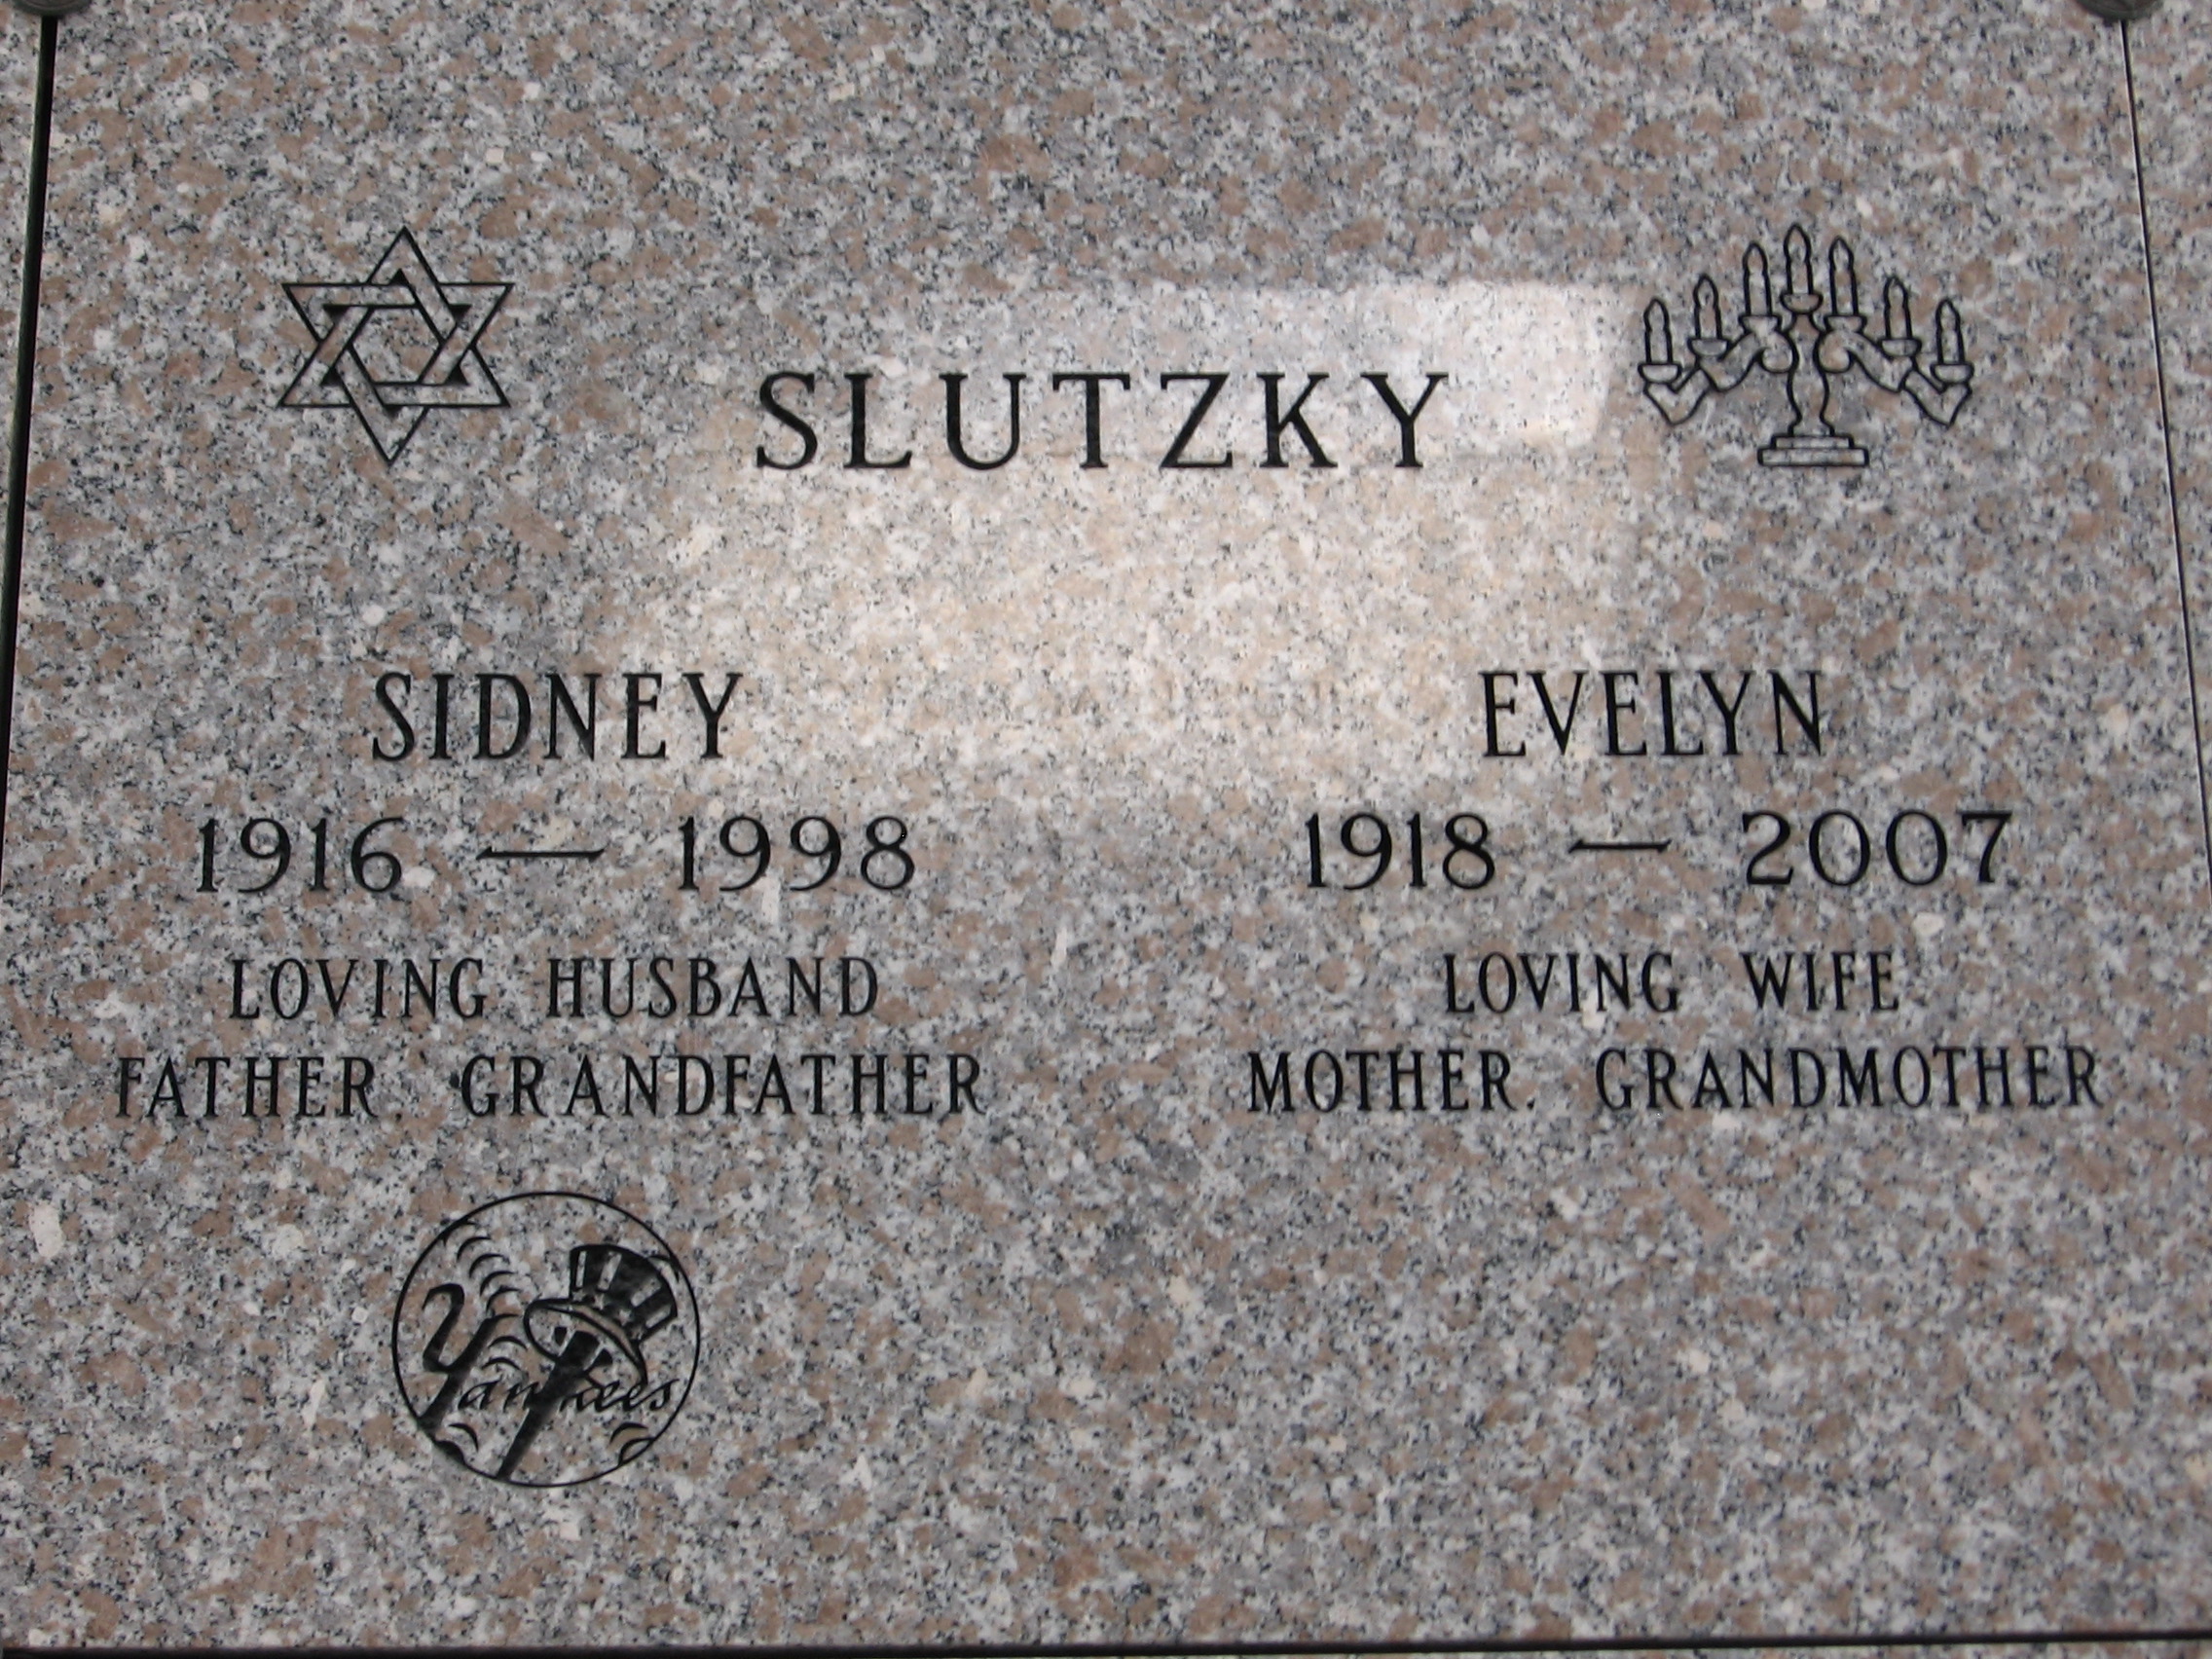 Sidney Slutzky